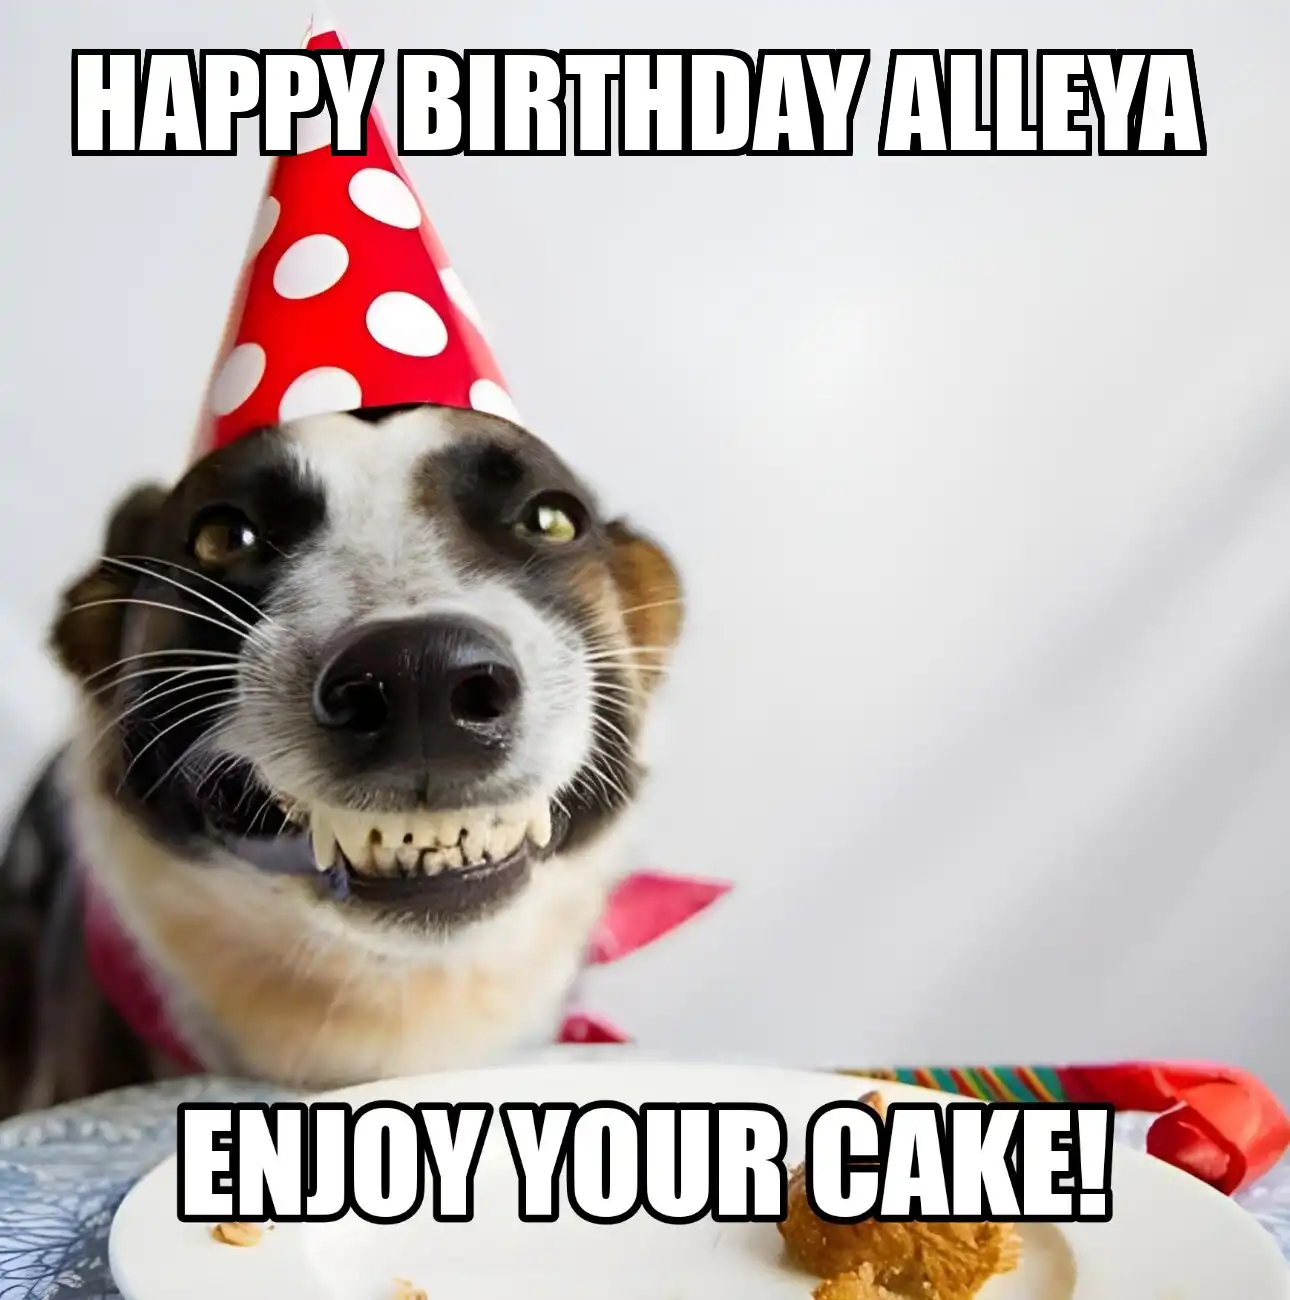 Happy Birthday Alleya Enjoy Your Cake Dog Meme